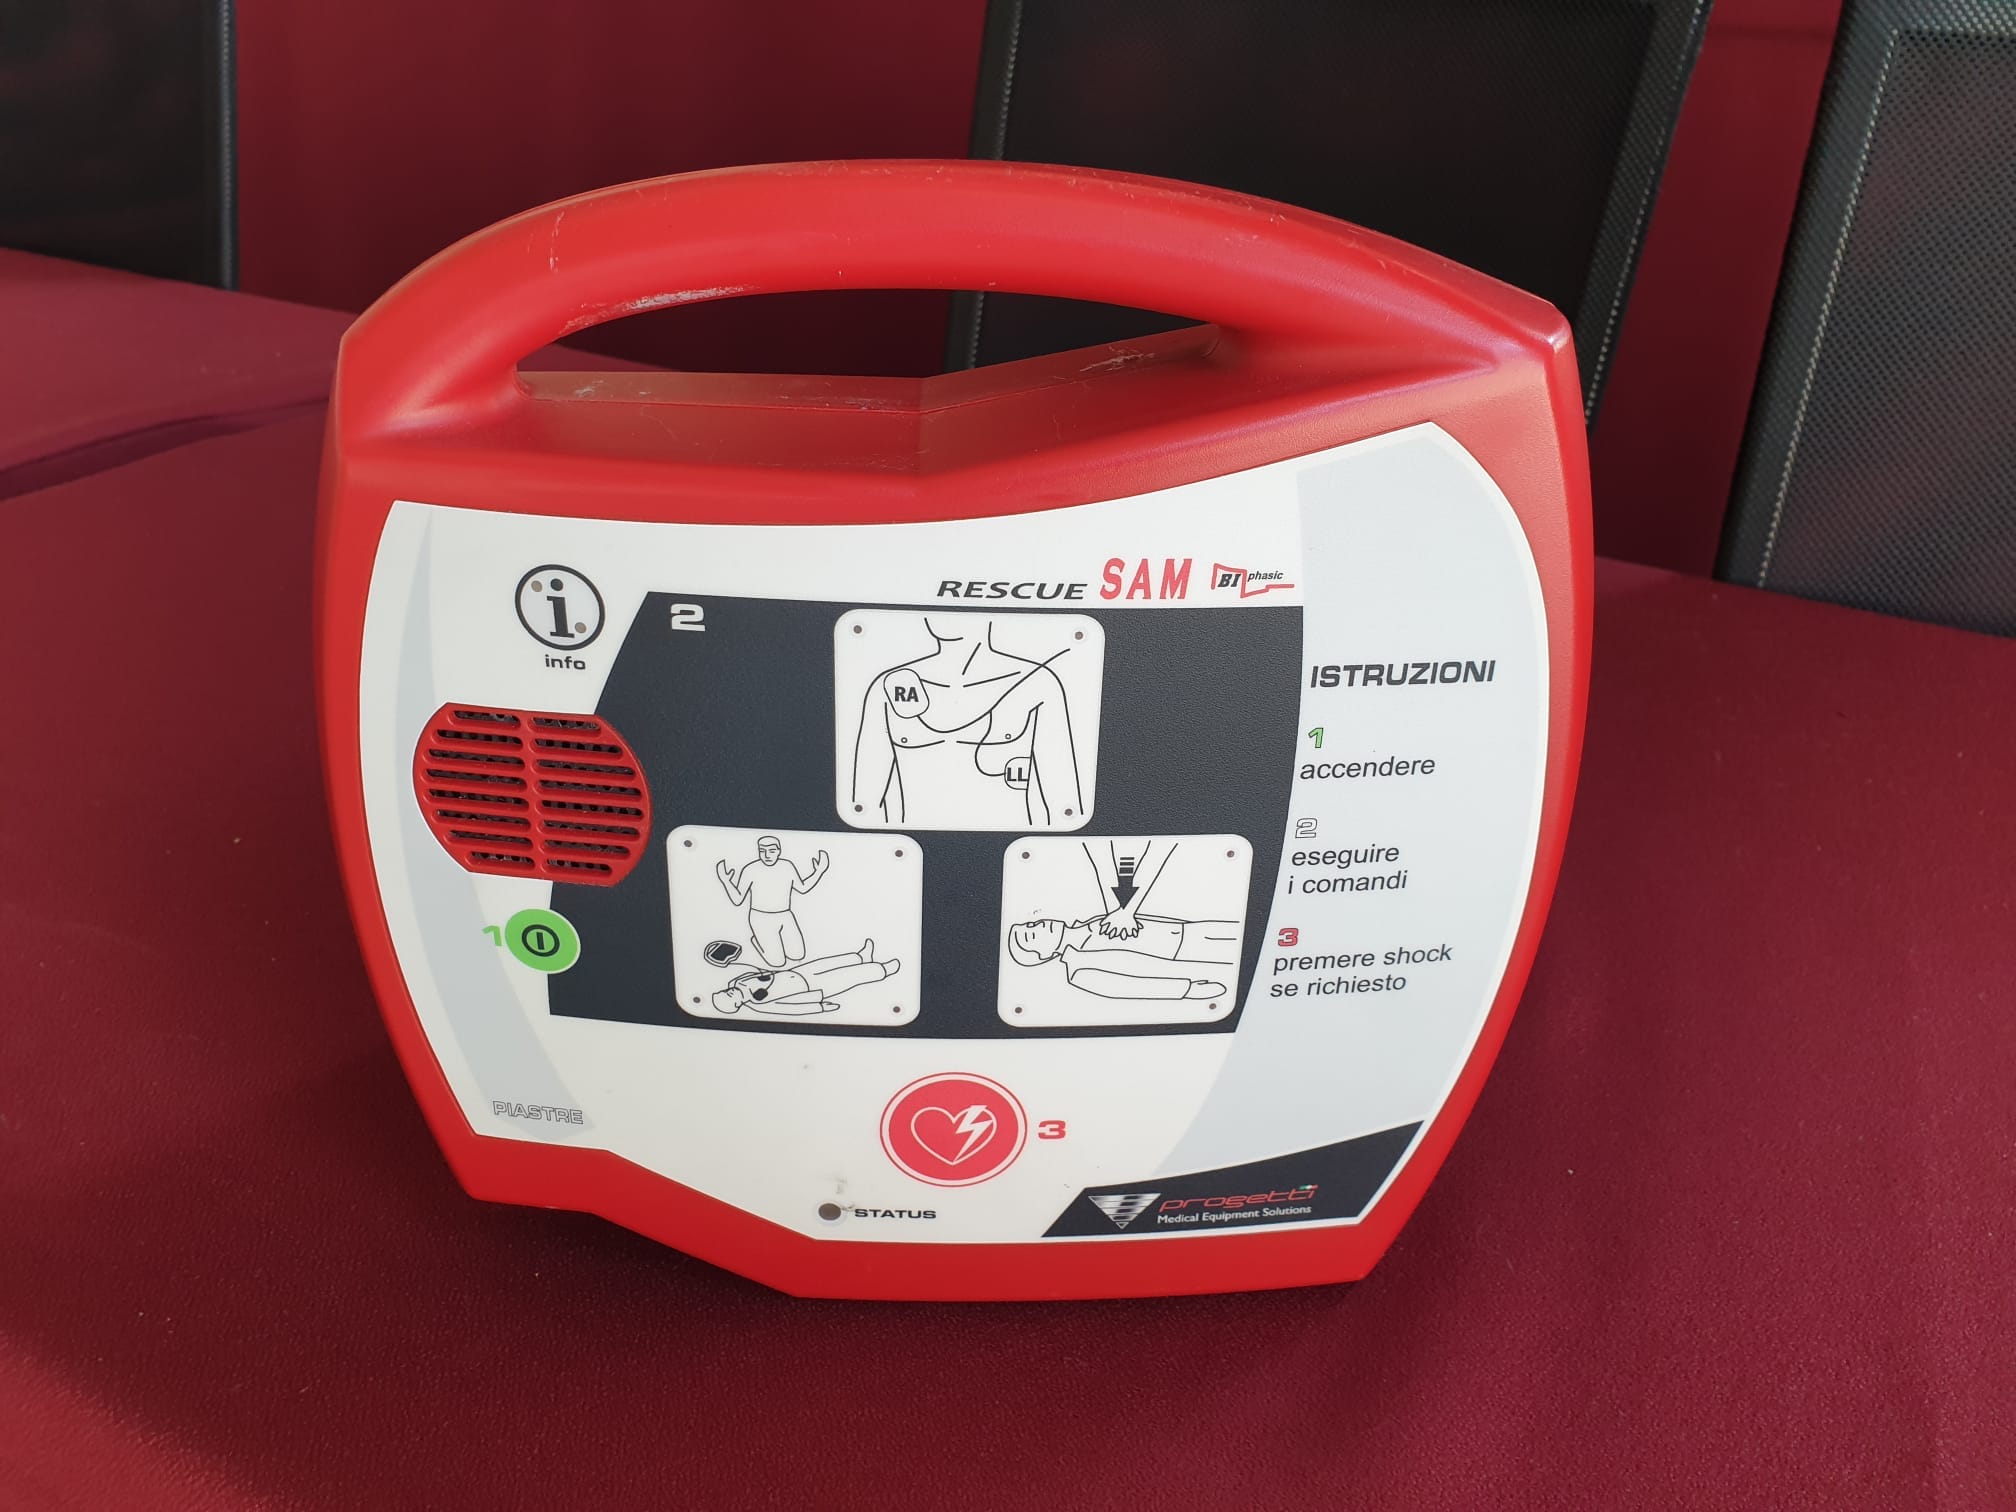 Nuovo defibrillatore a San Damiano d'Asti